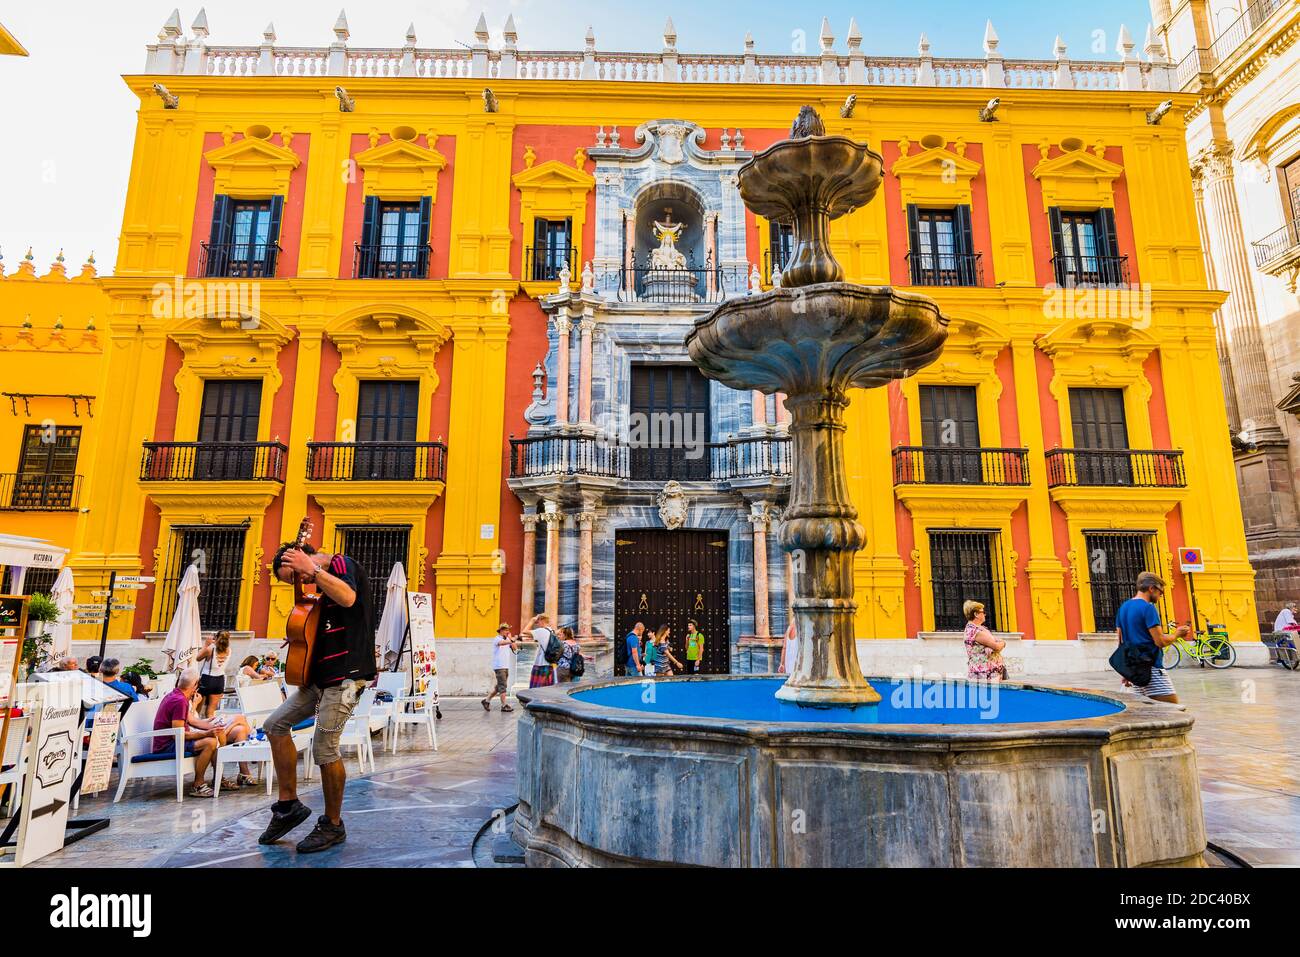 Brunnen auf der Plaza del Obispo - Platz des Bischofs, im Hintergrund der Bischofspalast. Málaga, Andalusien, Spanien, Europa Stockfoto